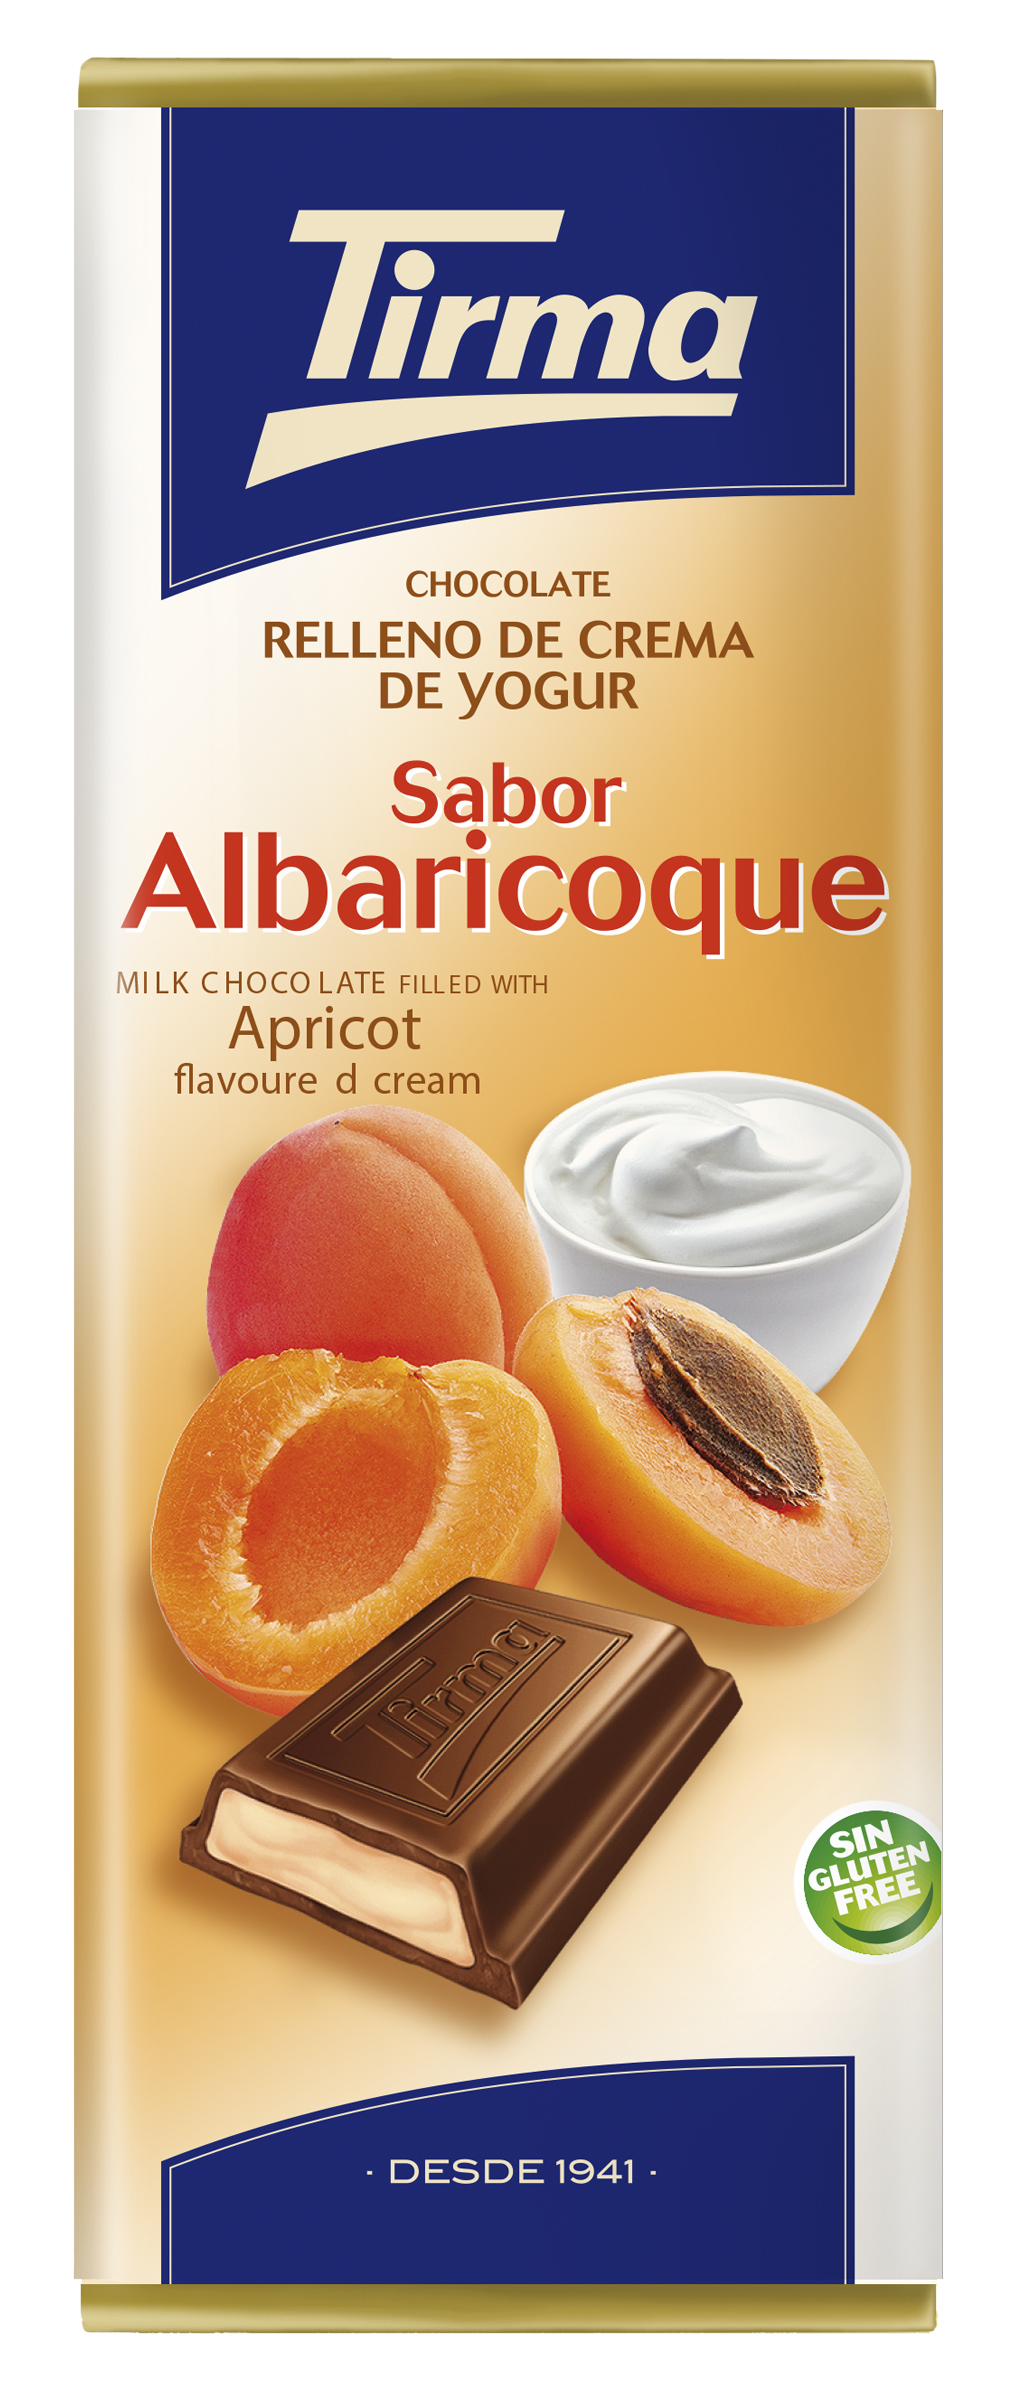 Chocolate relleno de crema de yogur sabor albaricoque 95g